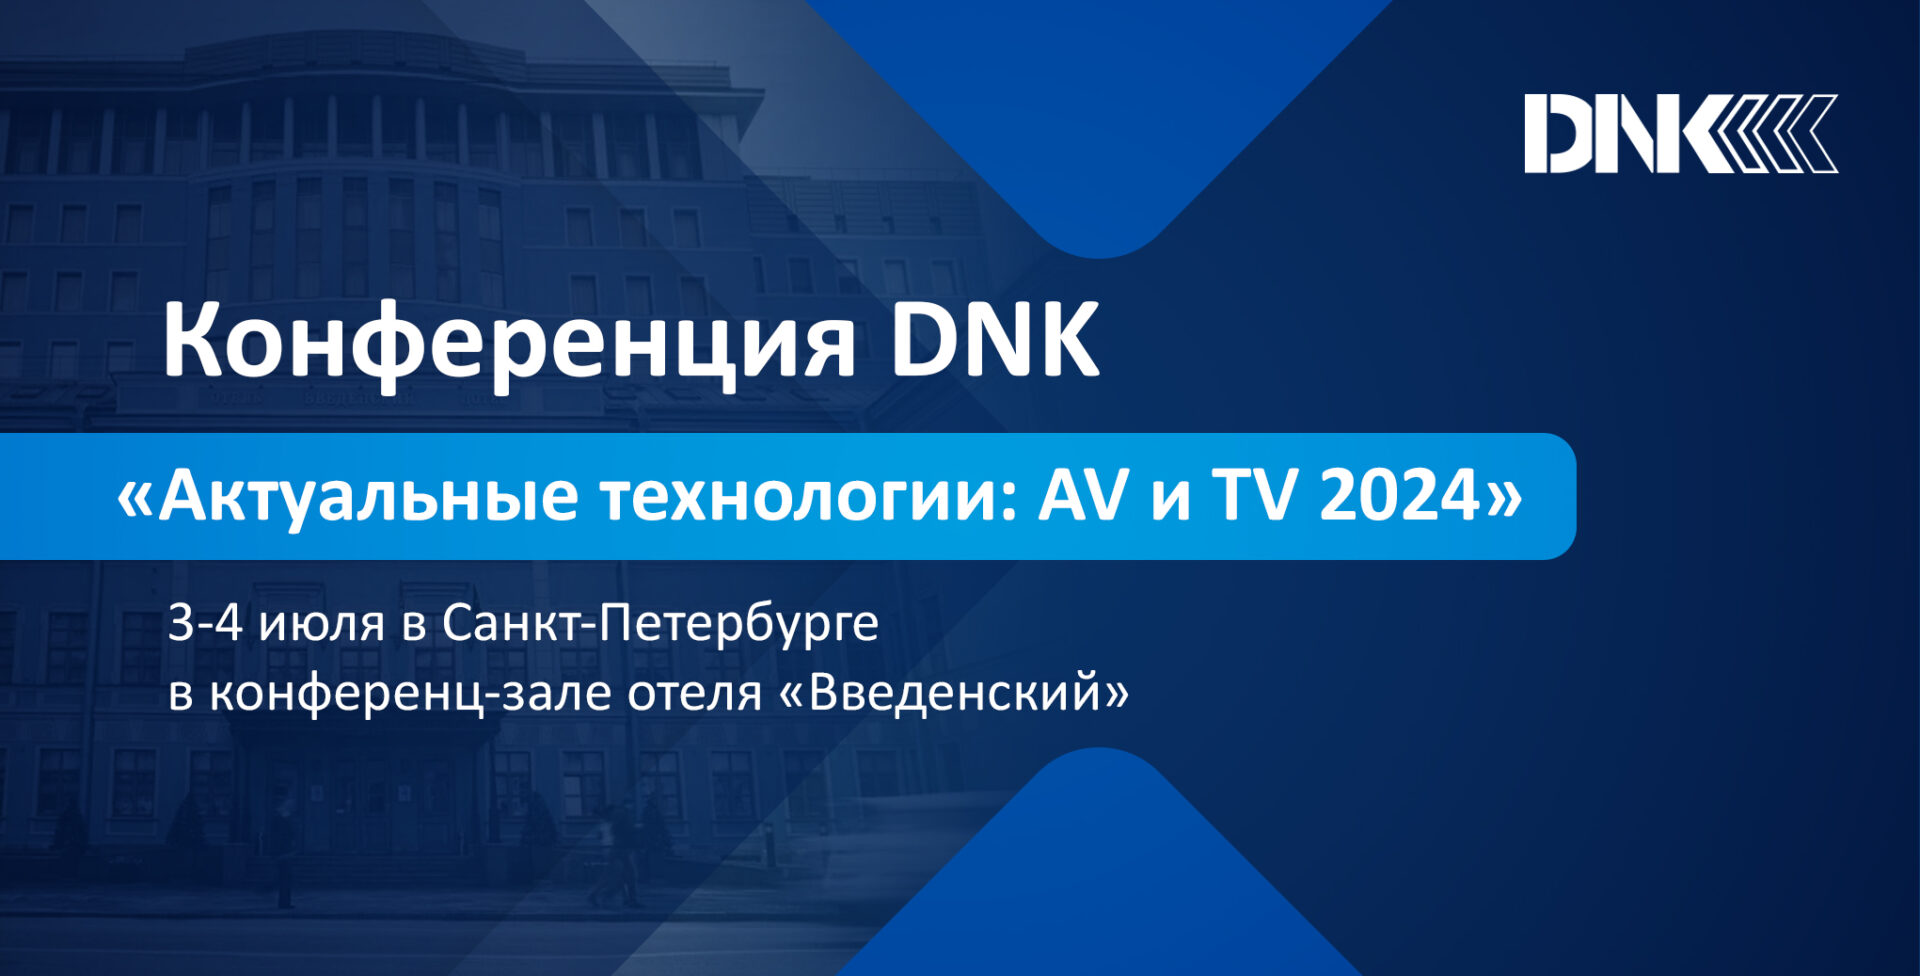 Конференция DNK «Актуальные технологии: AV и TV 2024»